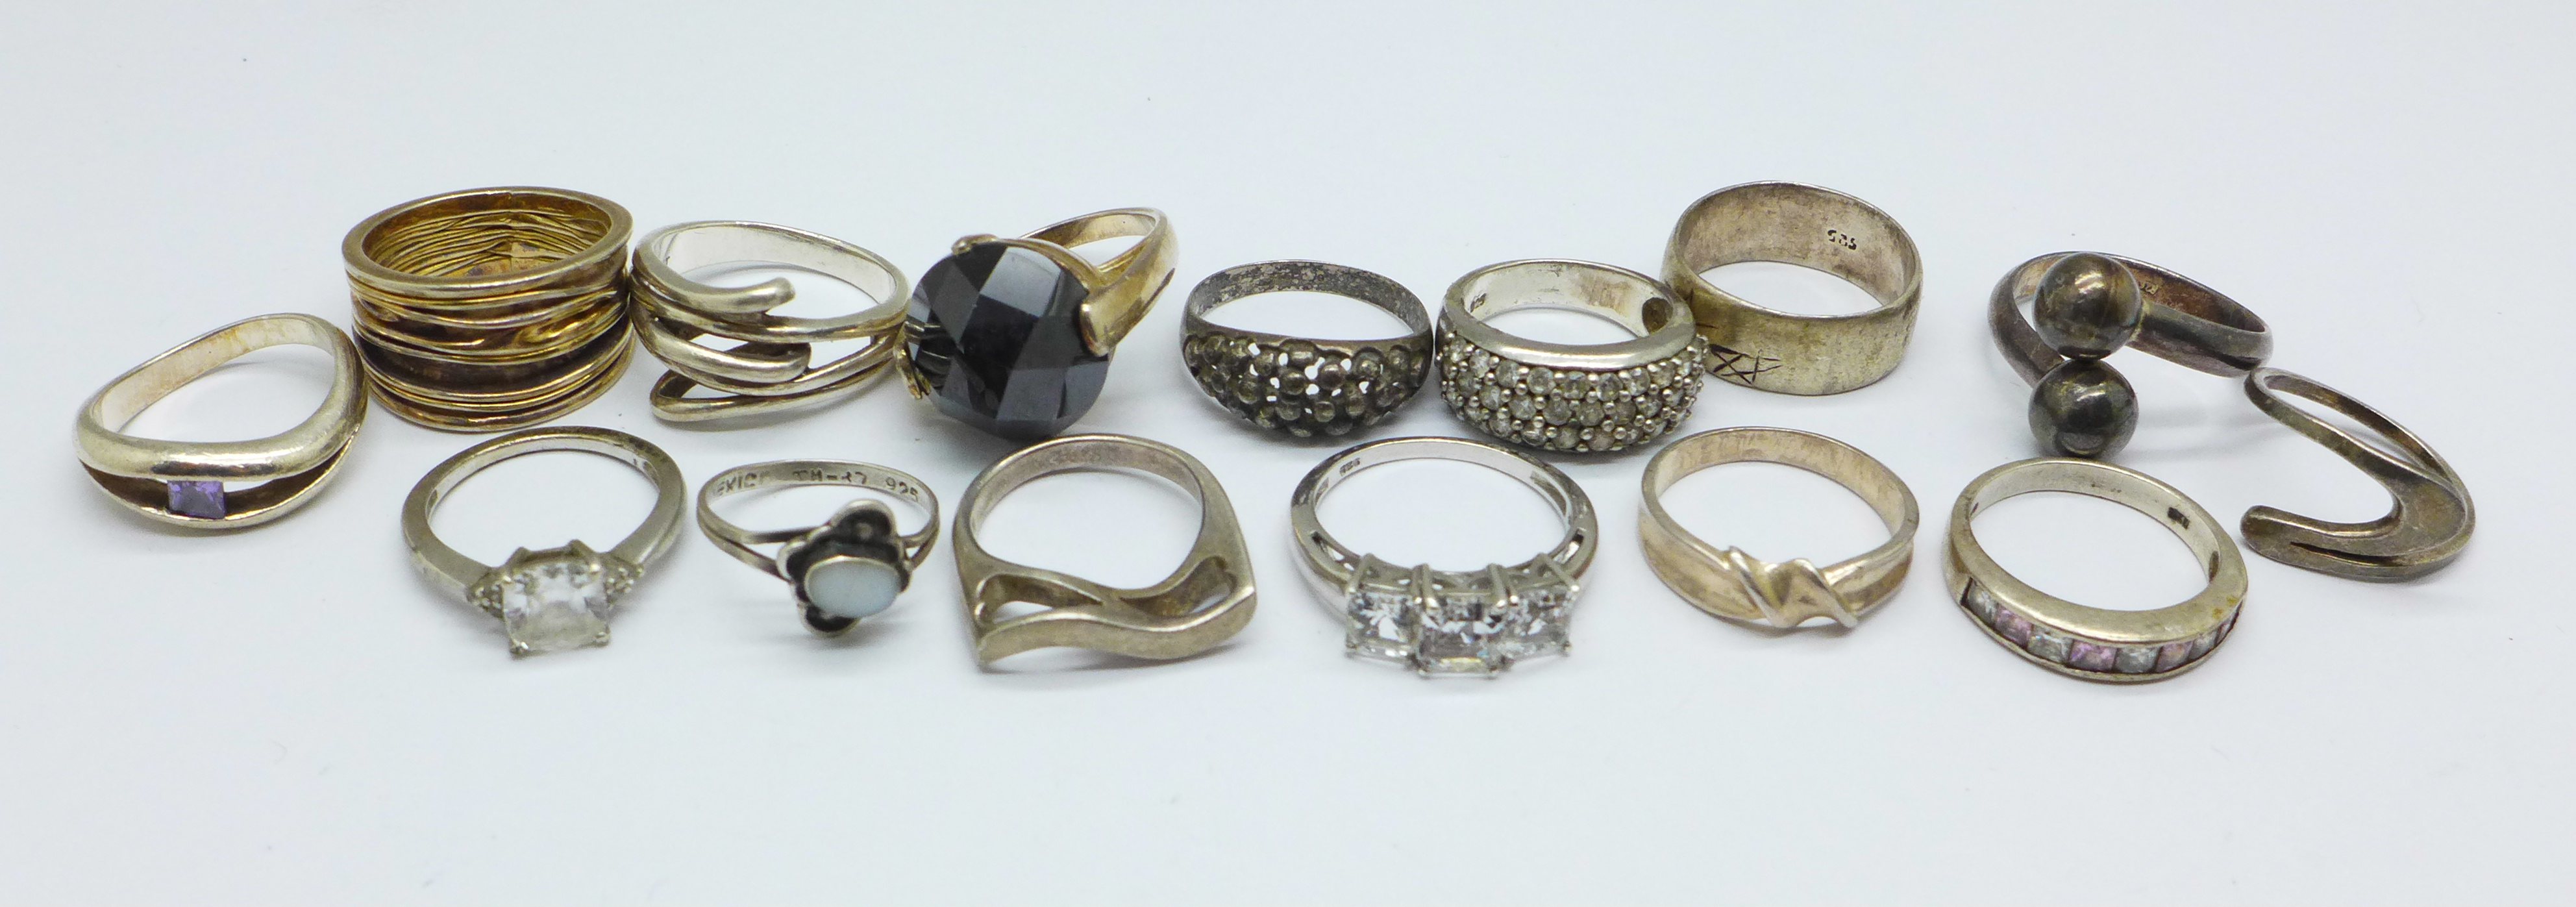 Fifteen silver rings